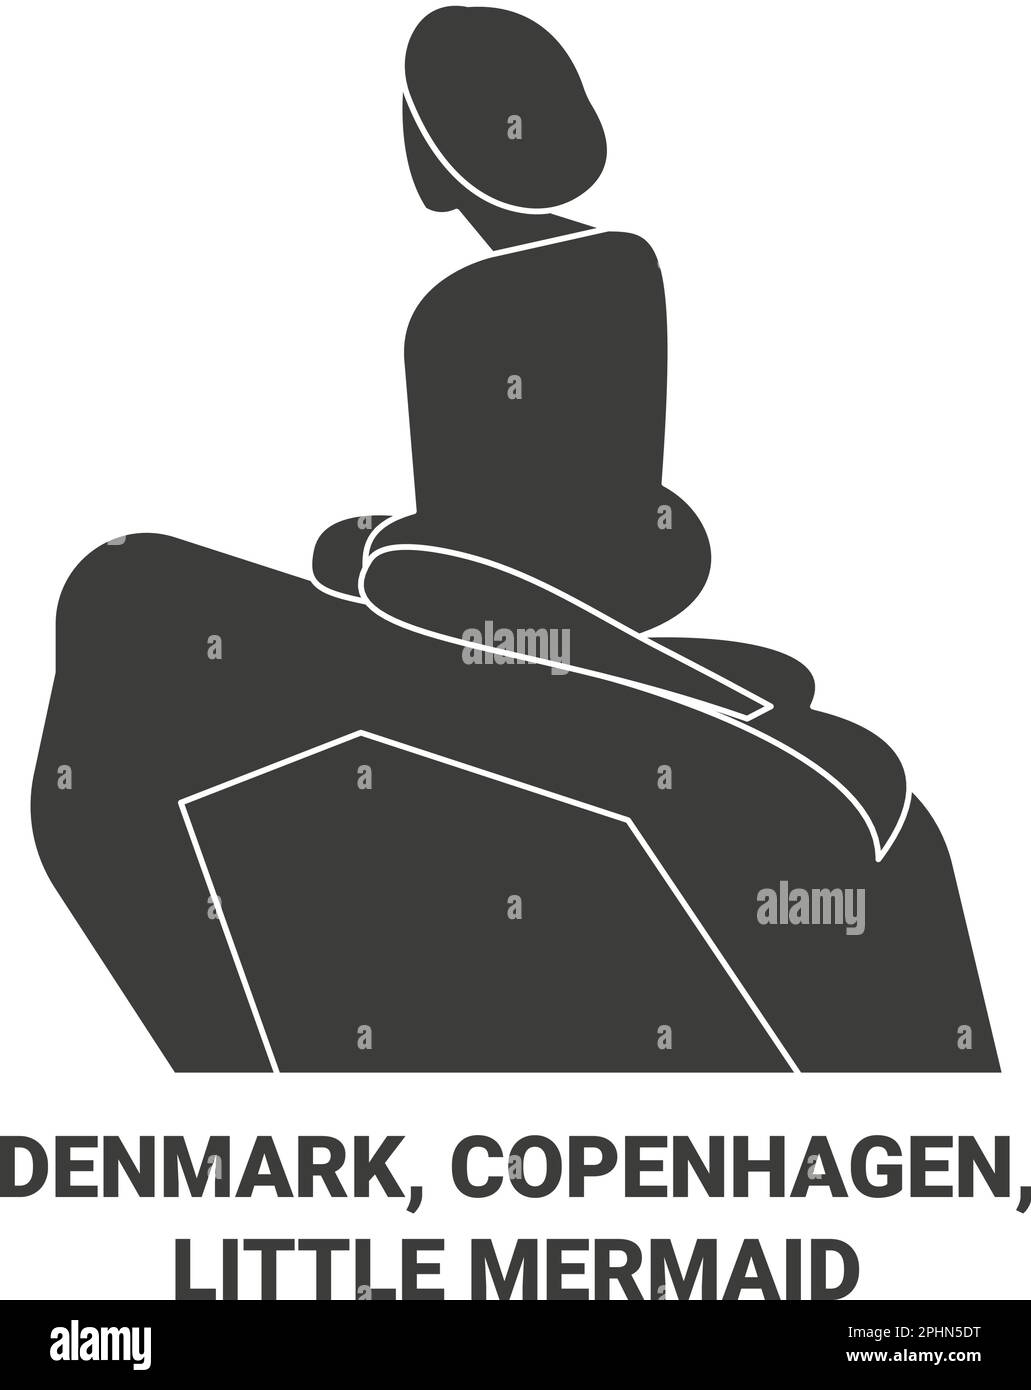 Denmark, Copenhagen, Little Mermaid travel landmark vector illustration Stock Vector